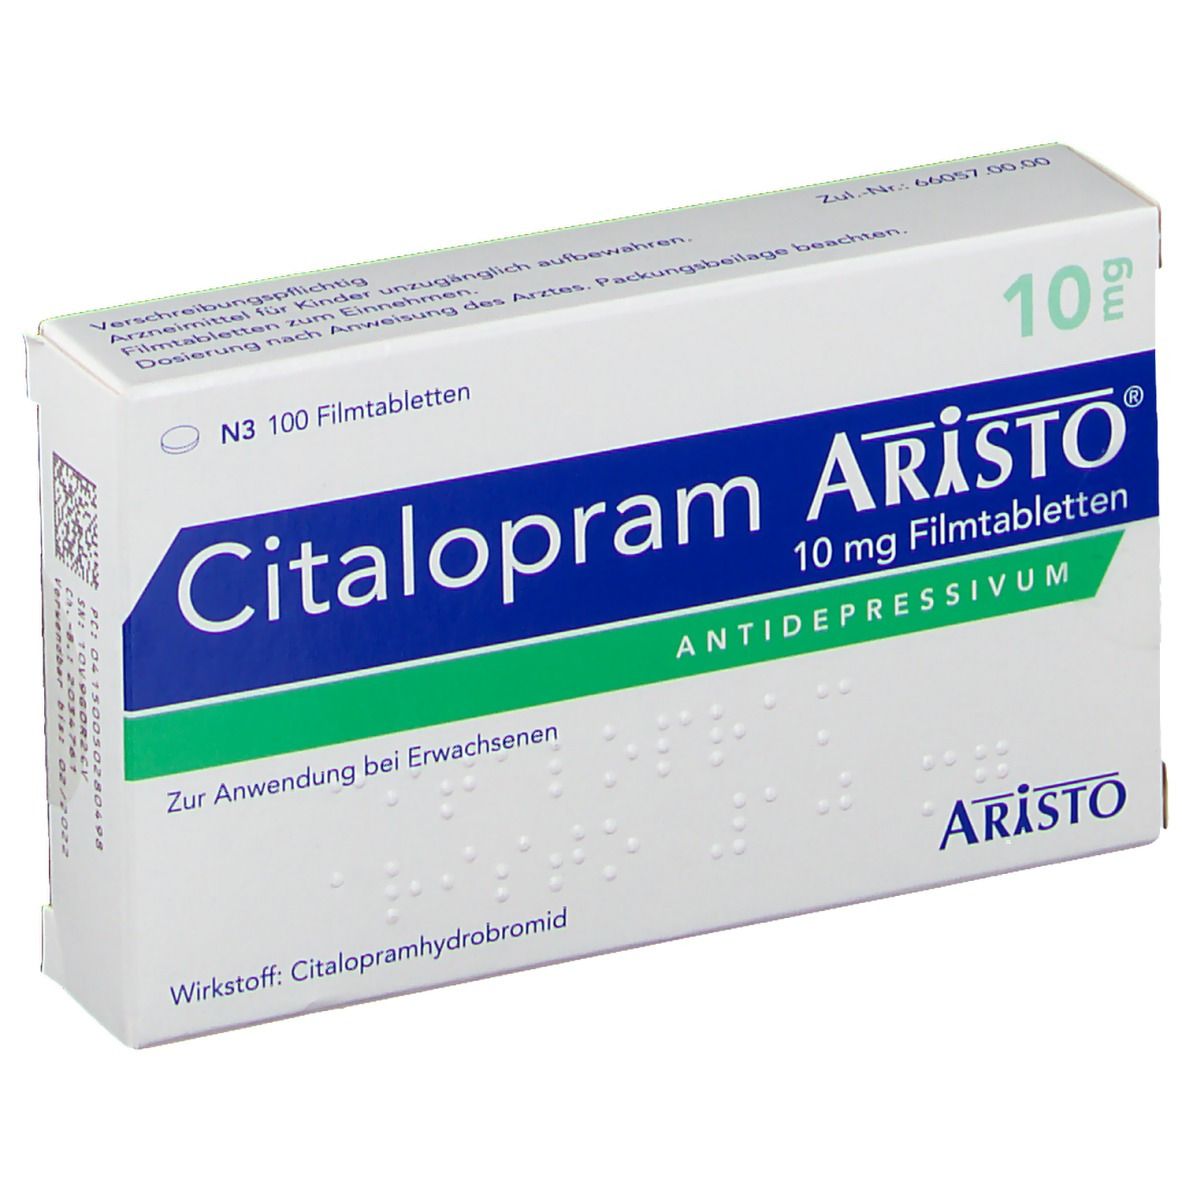 Citalopram Aristo® 10 mg